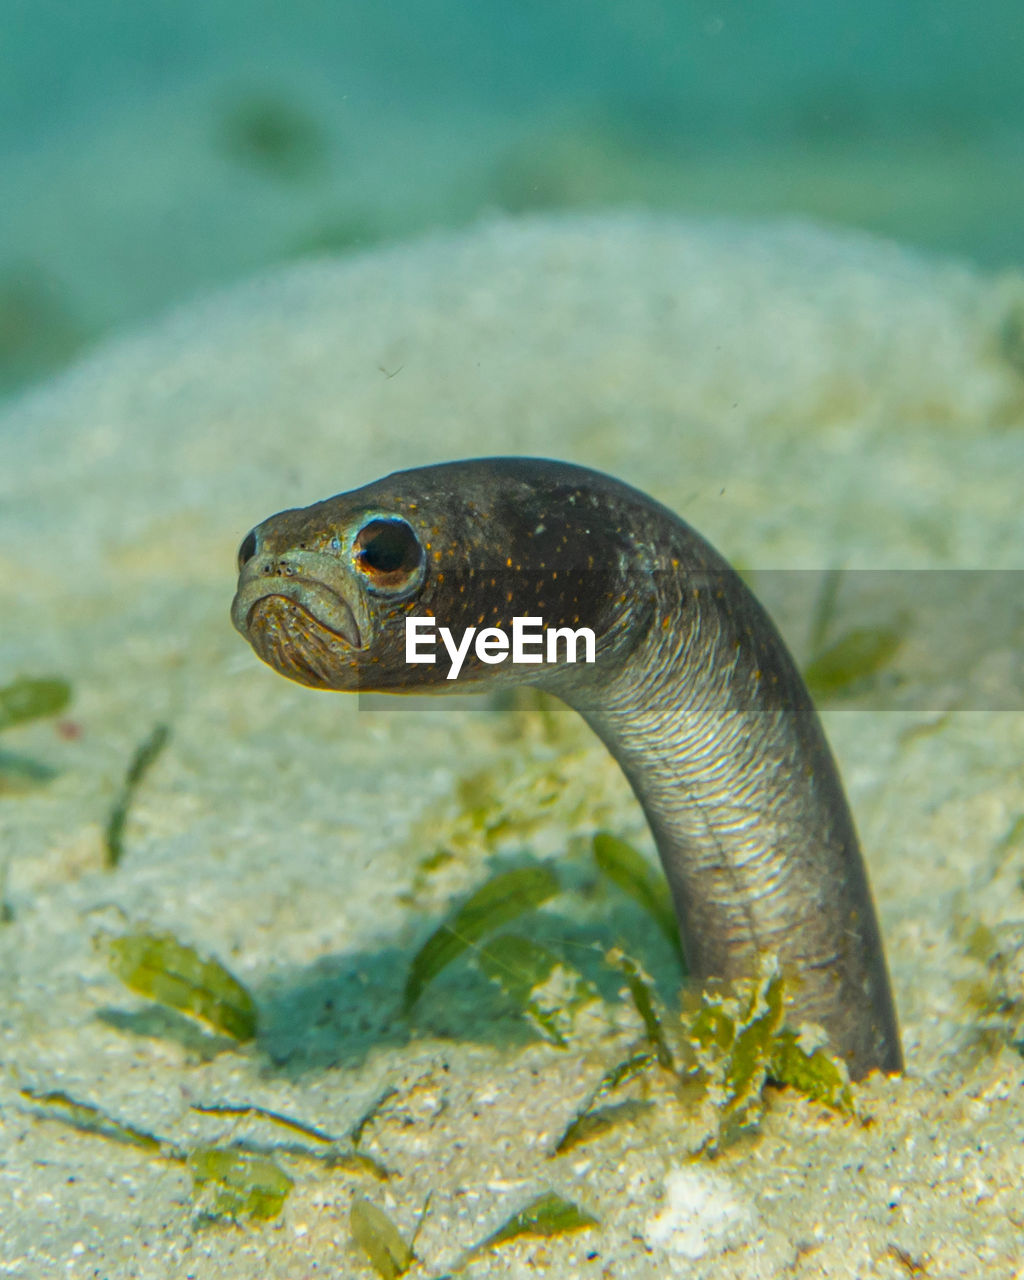 Heteroconger longissimus, brown garden eel